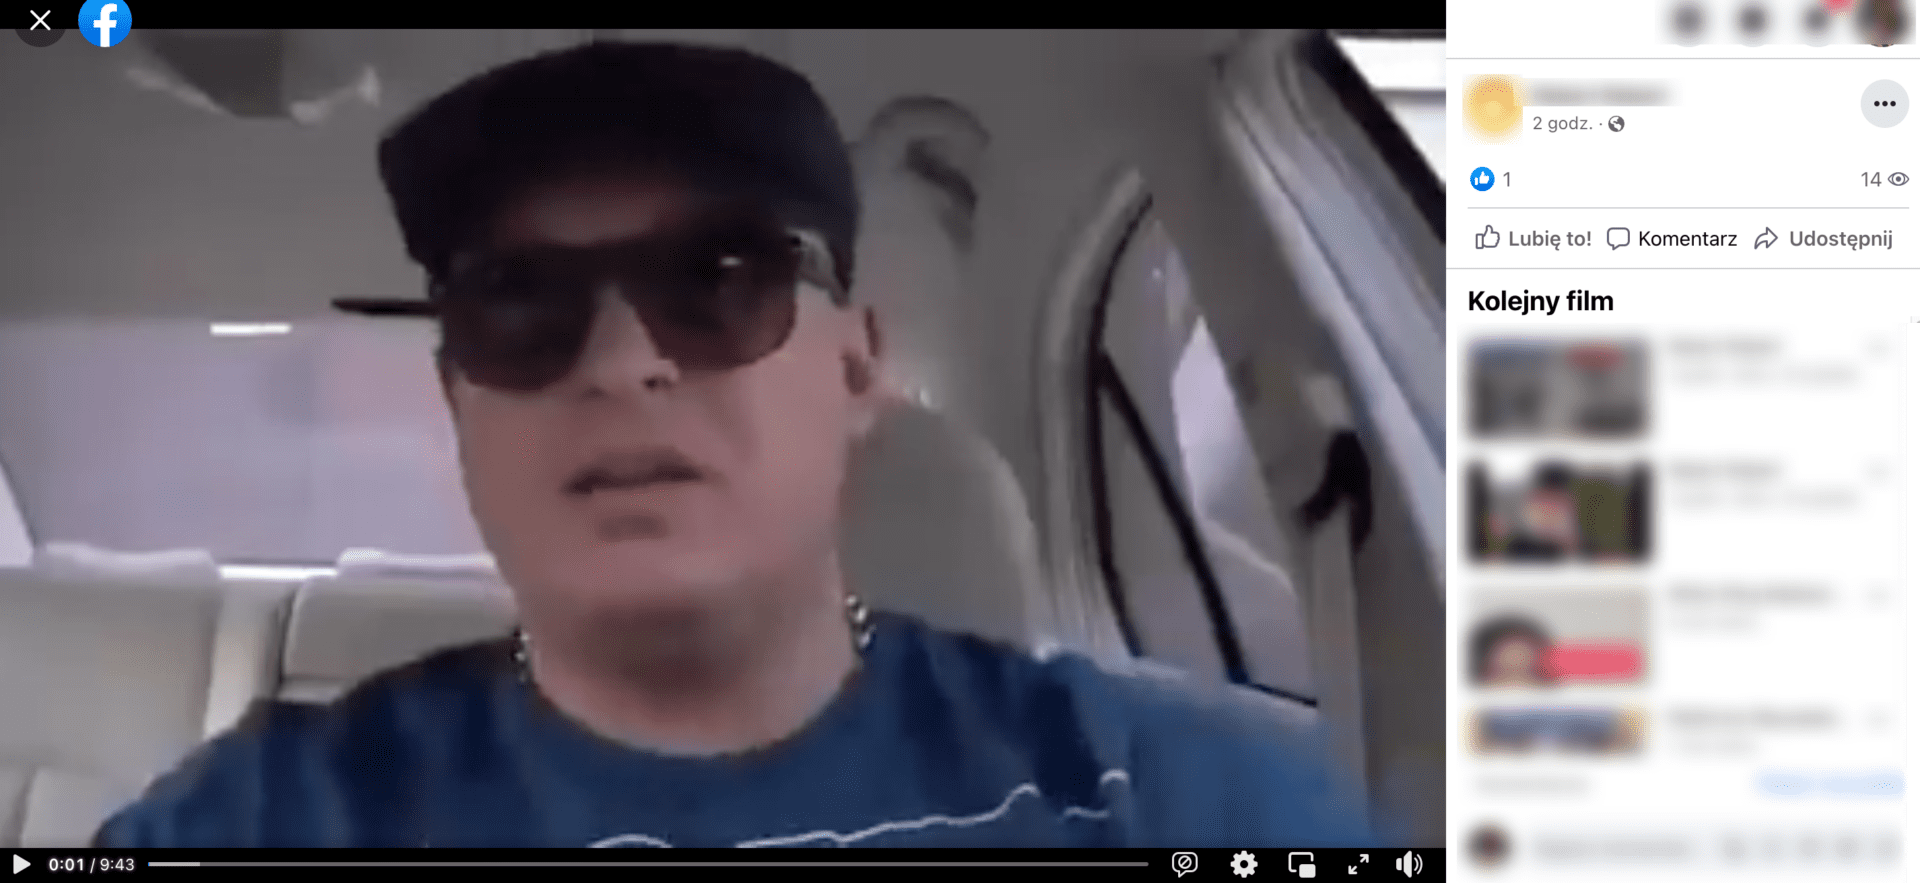 Zrzut ekranu z posta, w którym zamieszczono omawiane nagranie. Widoczny jest mężczyzna w samochodzie, w czapce z daszkiem i okularach przeciwsłonecznych.